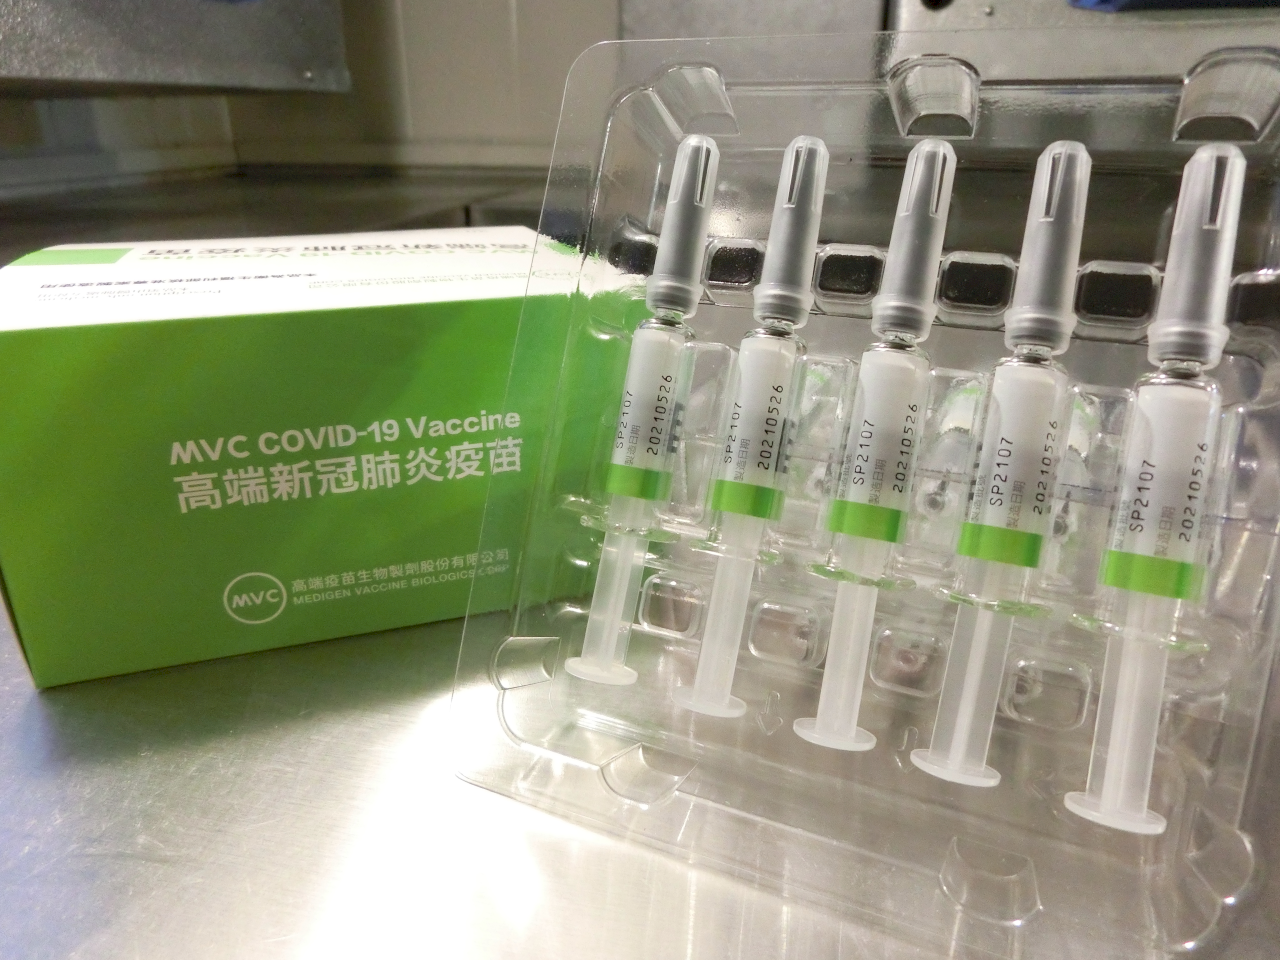 Vaccination mixte autorisée pour les personnes vaccinées de Medigen